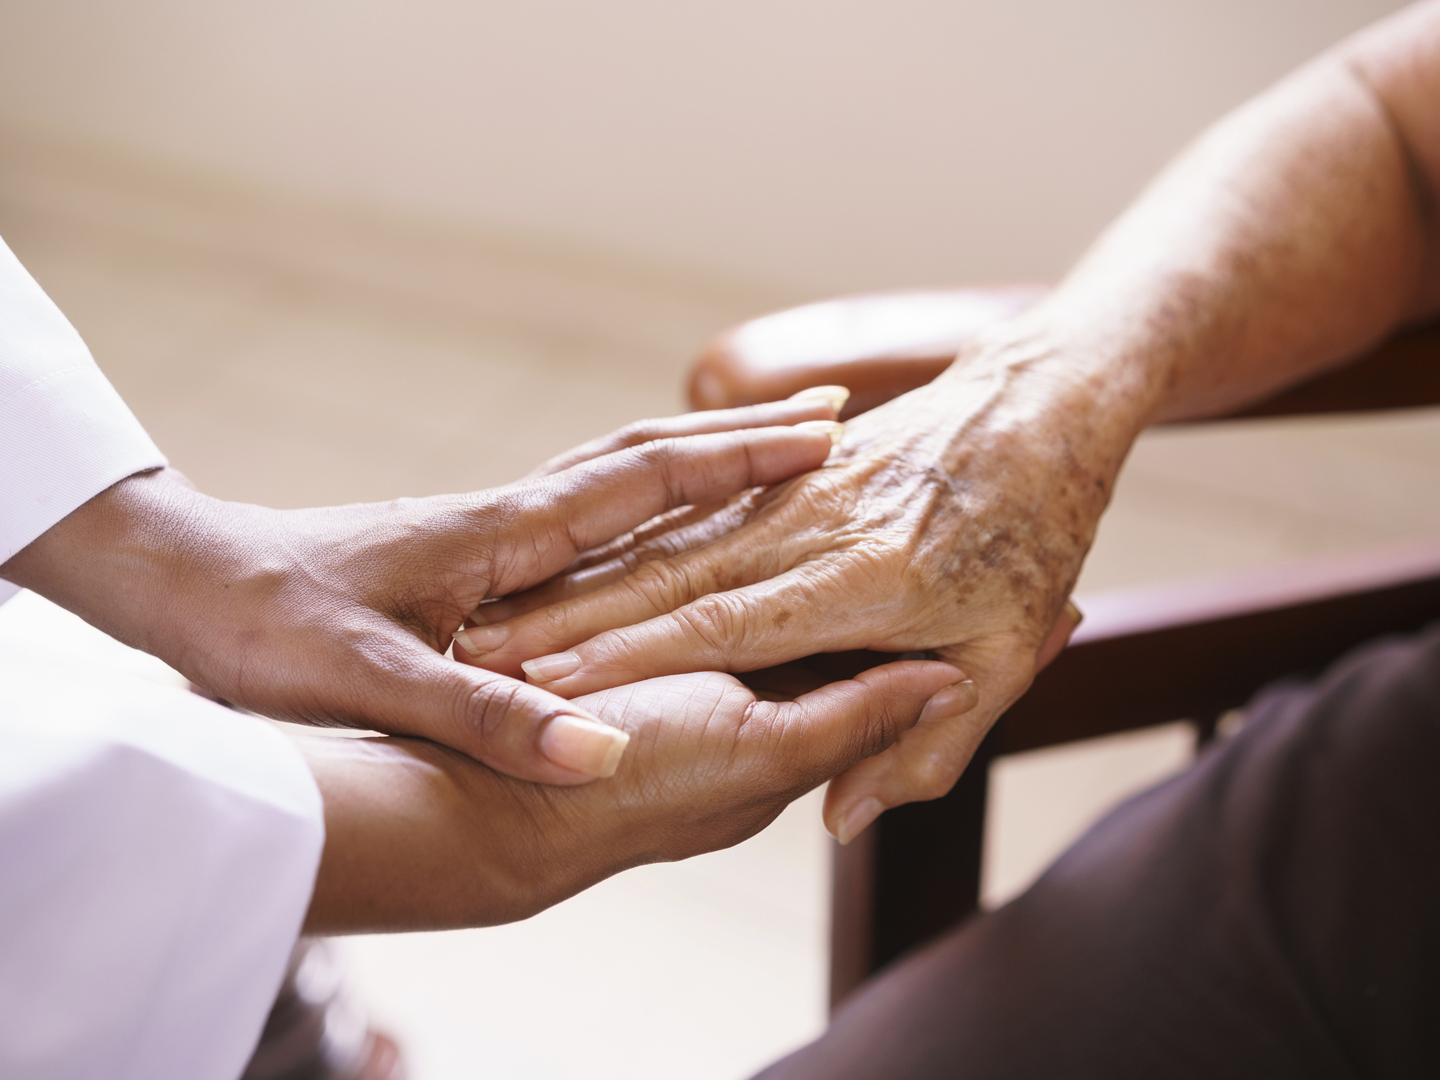 老年收容所的老人:老年病人接受一位黑人女医生的探视。他们在医院里握手交谈。